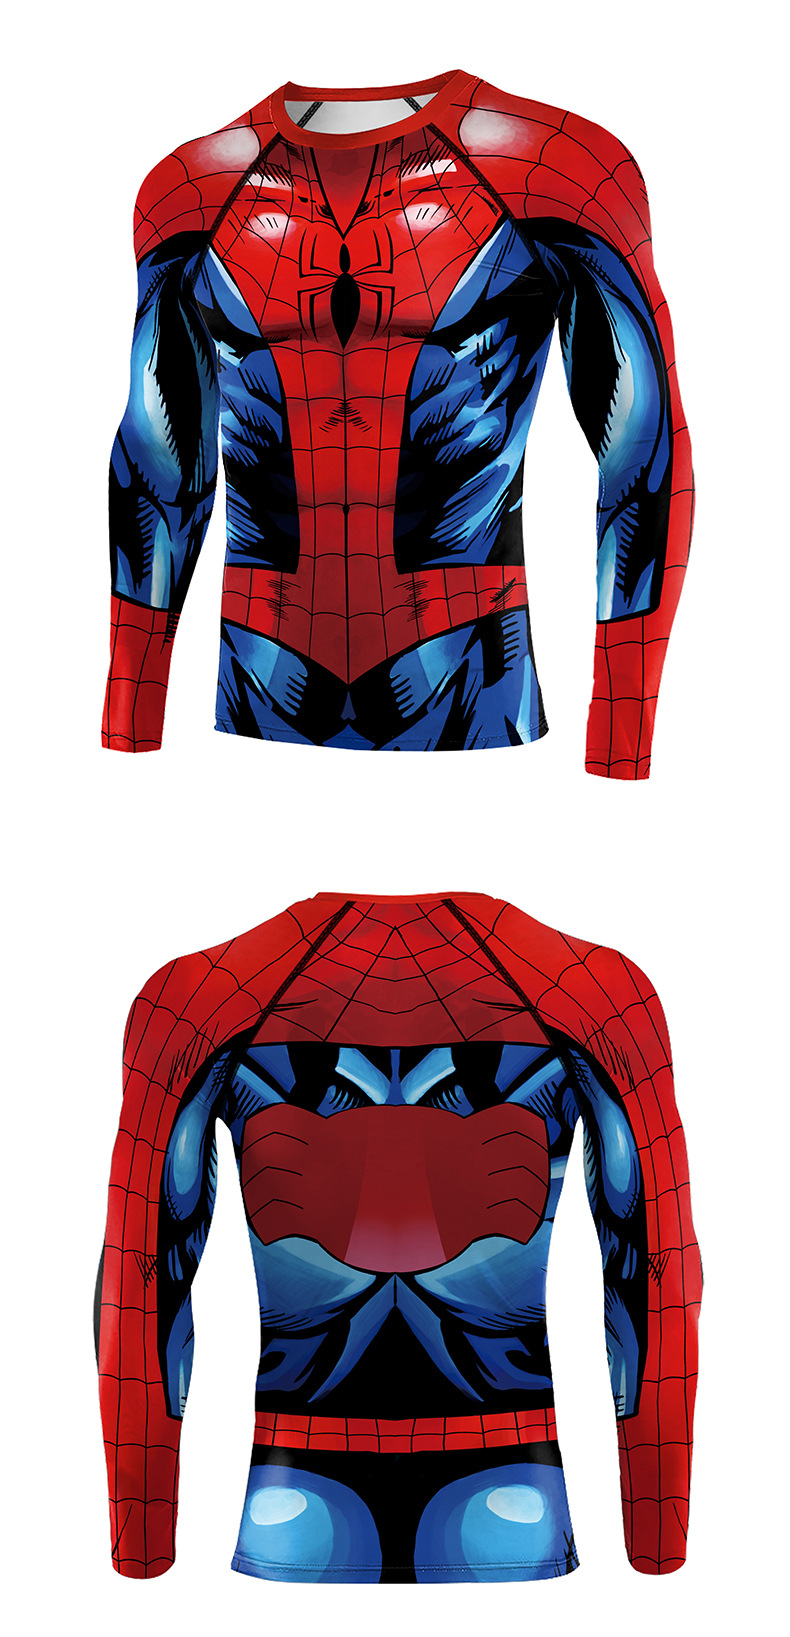 Marvel Avenger spider man compression workout shirt